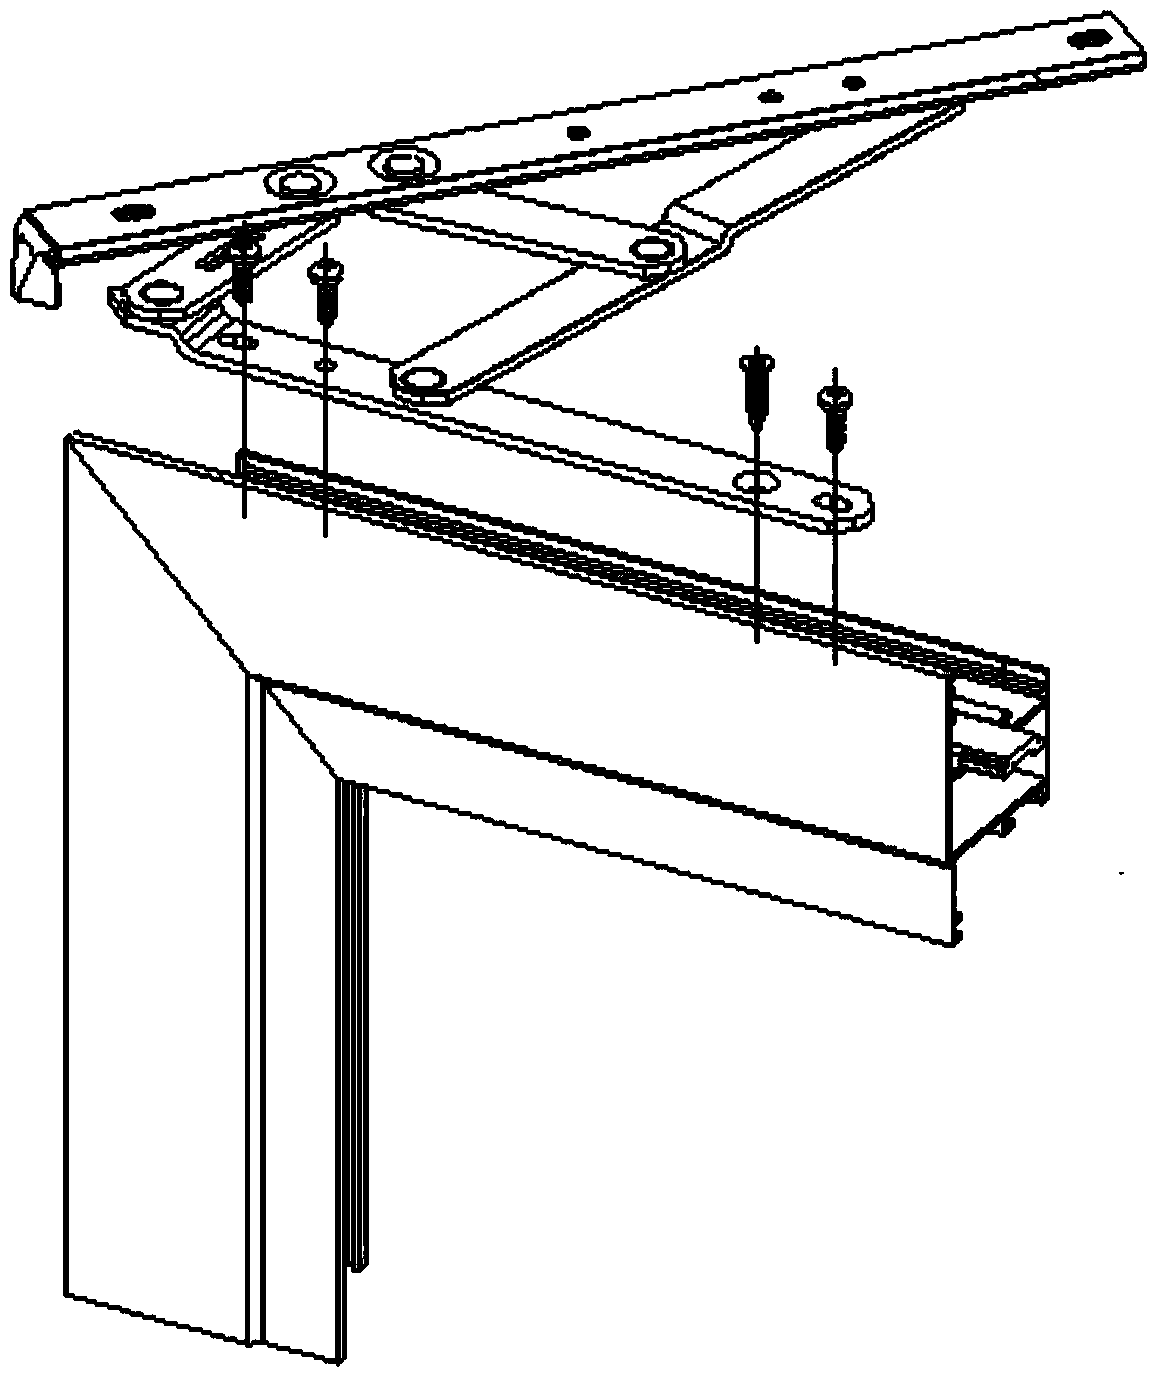 Door and window sliding support